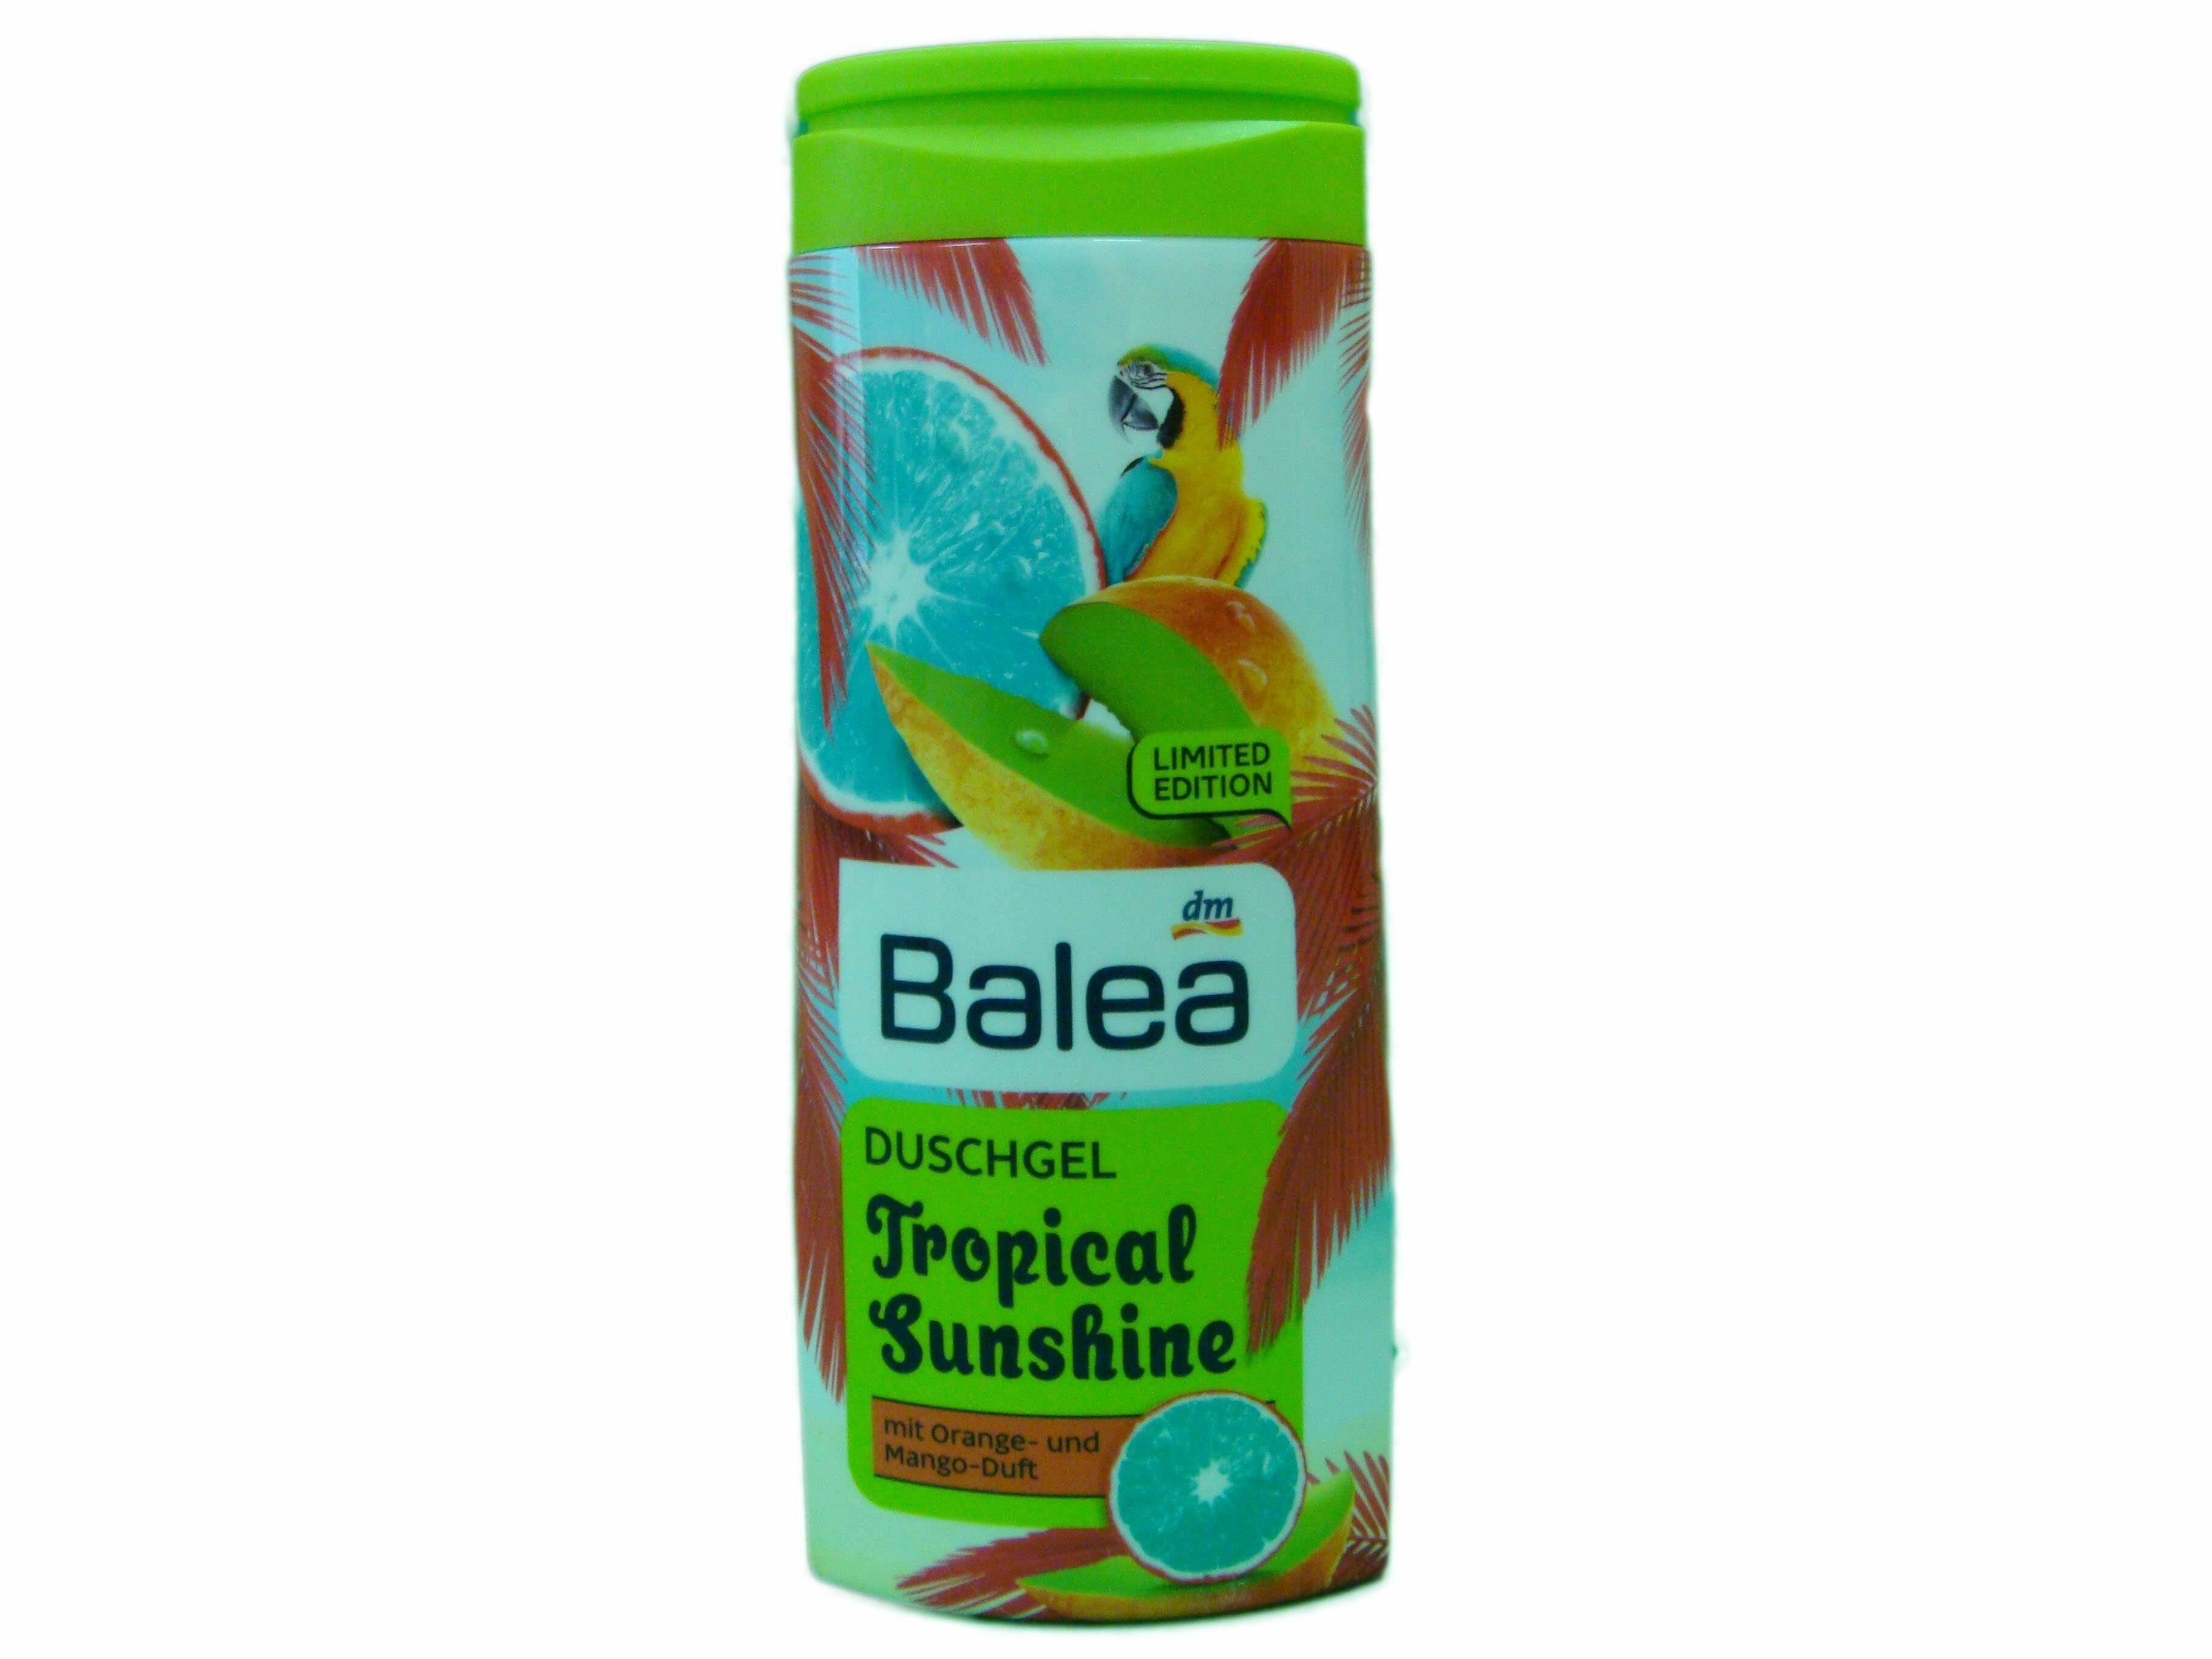 Гель для душа с увлажняющей формулой Balea Tropicall Sunshine